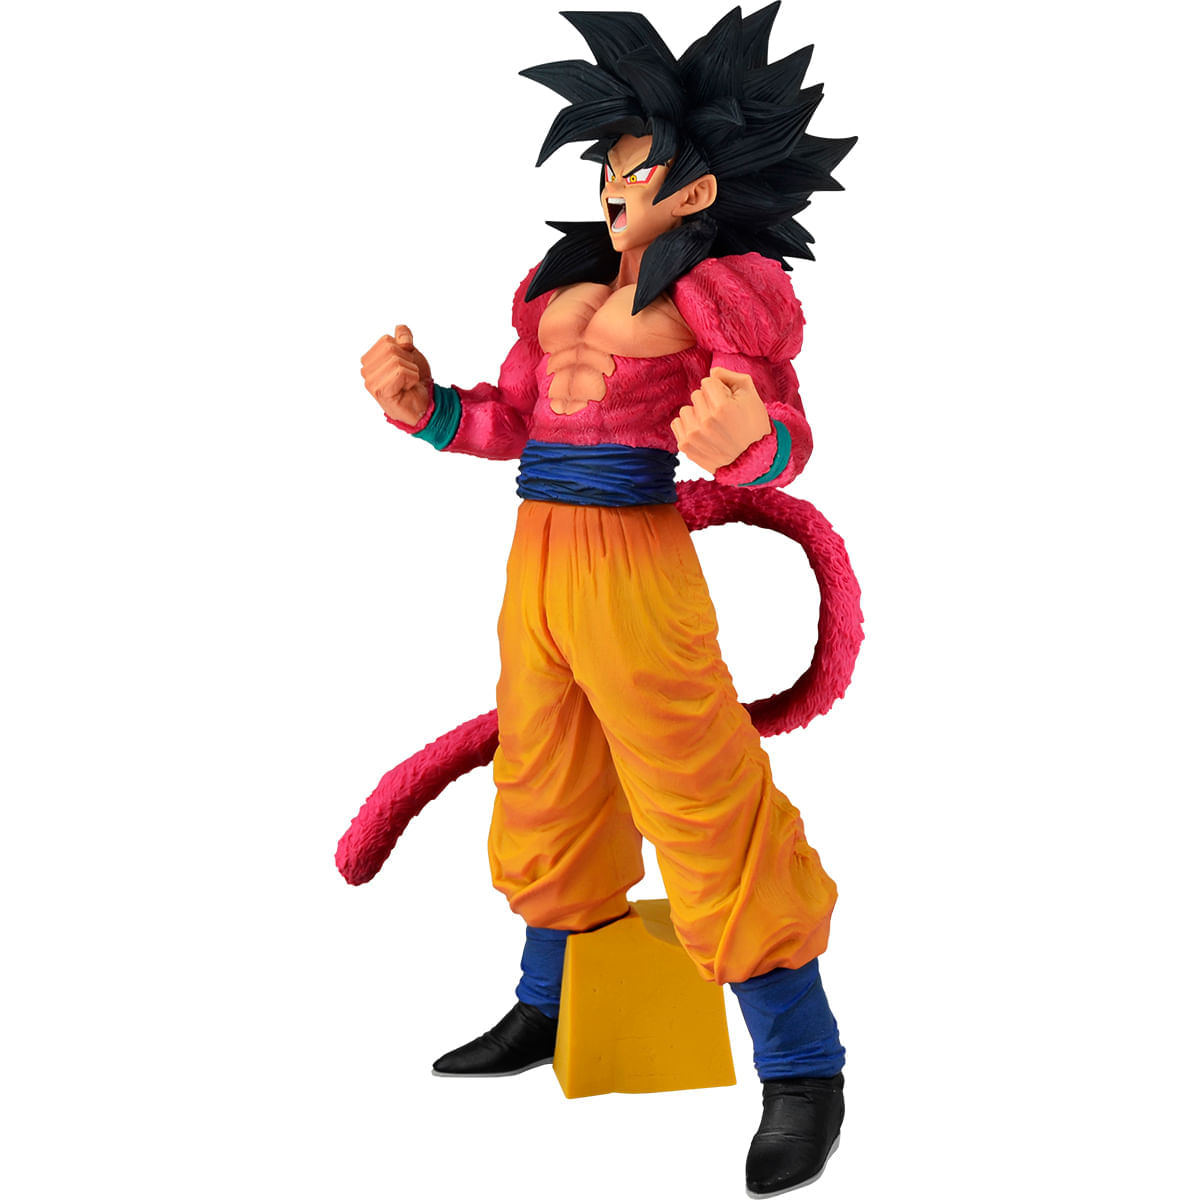 Estátua Son Goku Super Saiyan 4 The Brush Super Master Star Piece: Dragon  Ball GT Anime Mangá - Banpresto Bandai - Toyshow Tudo de Marvel DC Netflix  Geek Funko Pop Colecionáveis